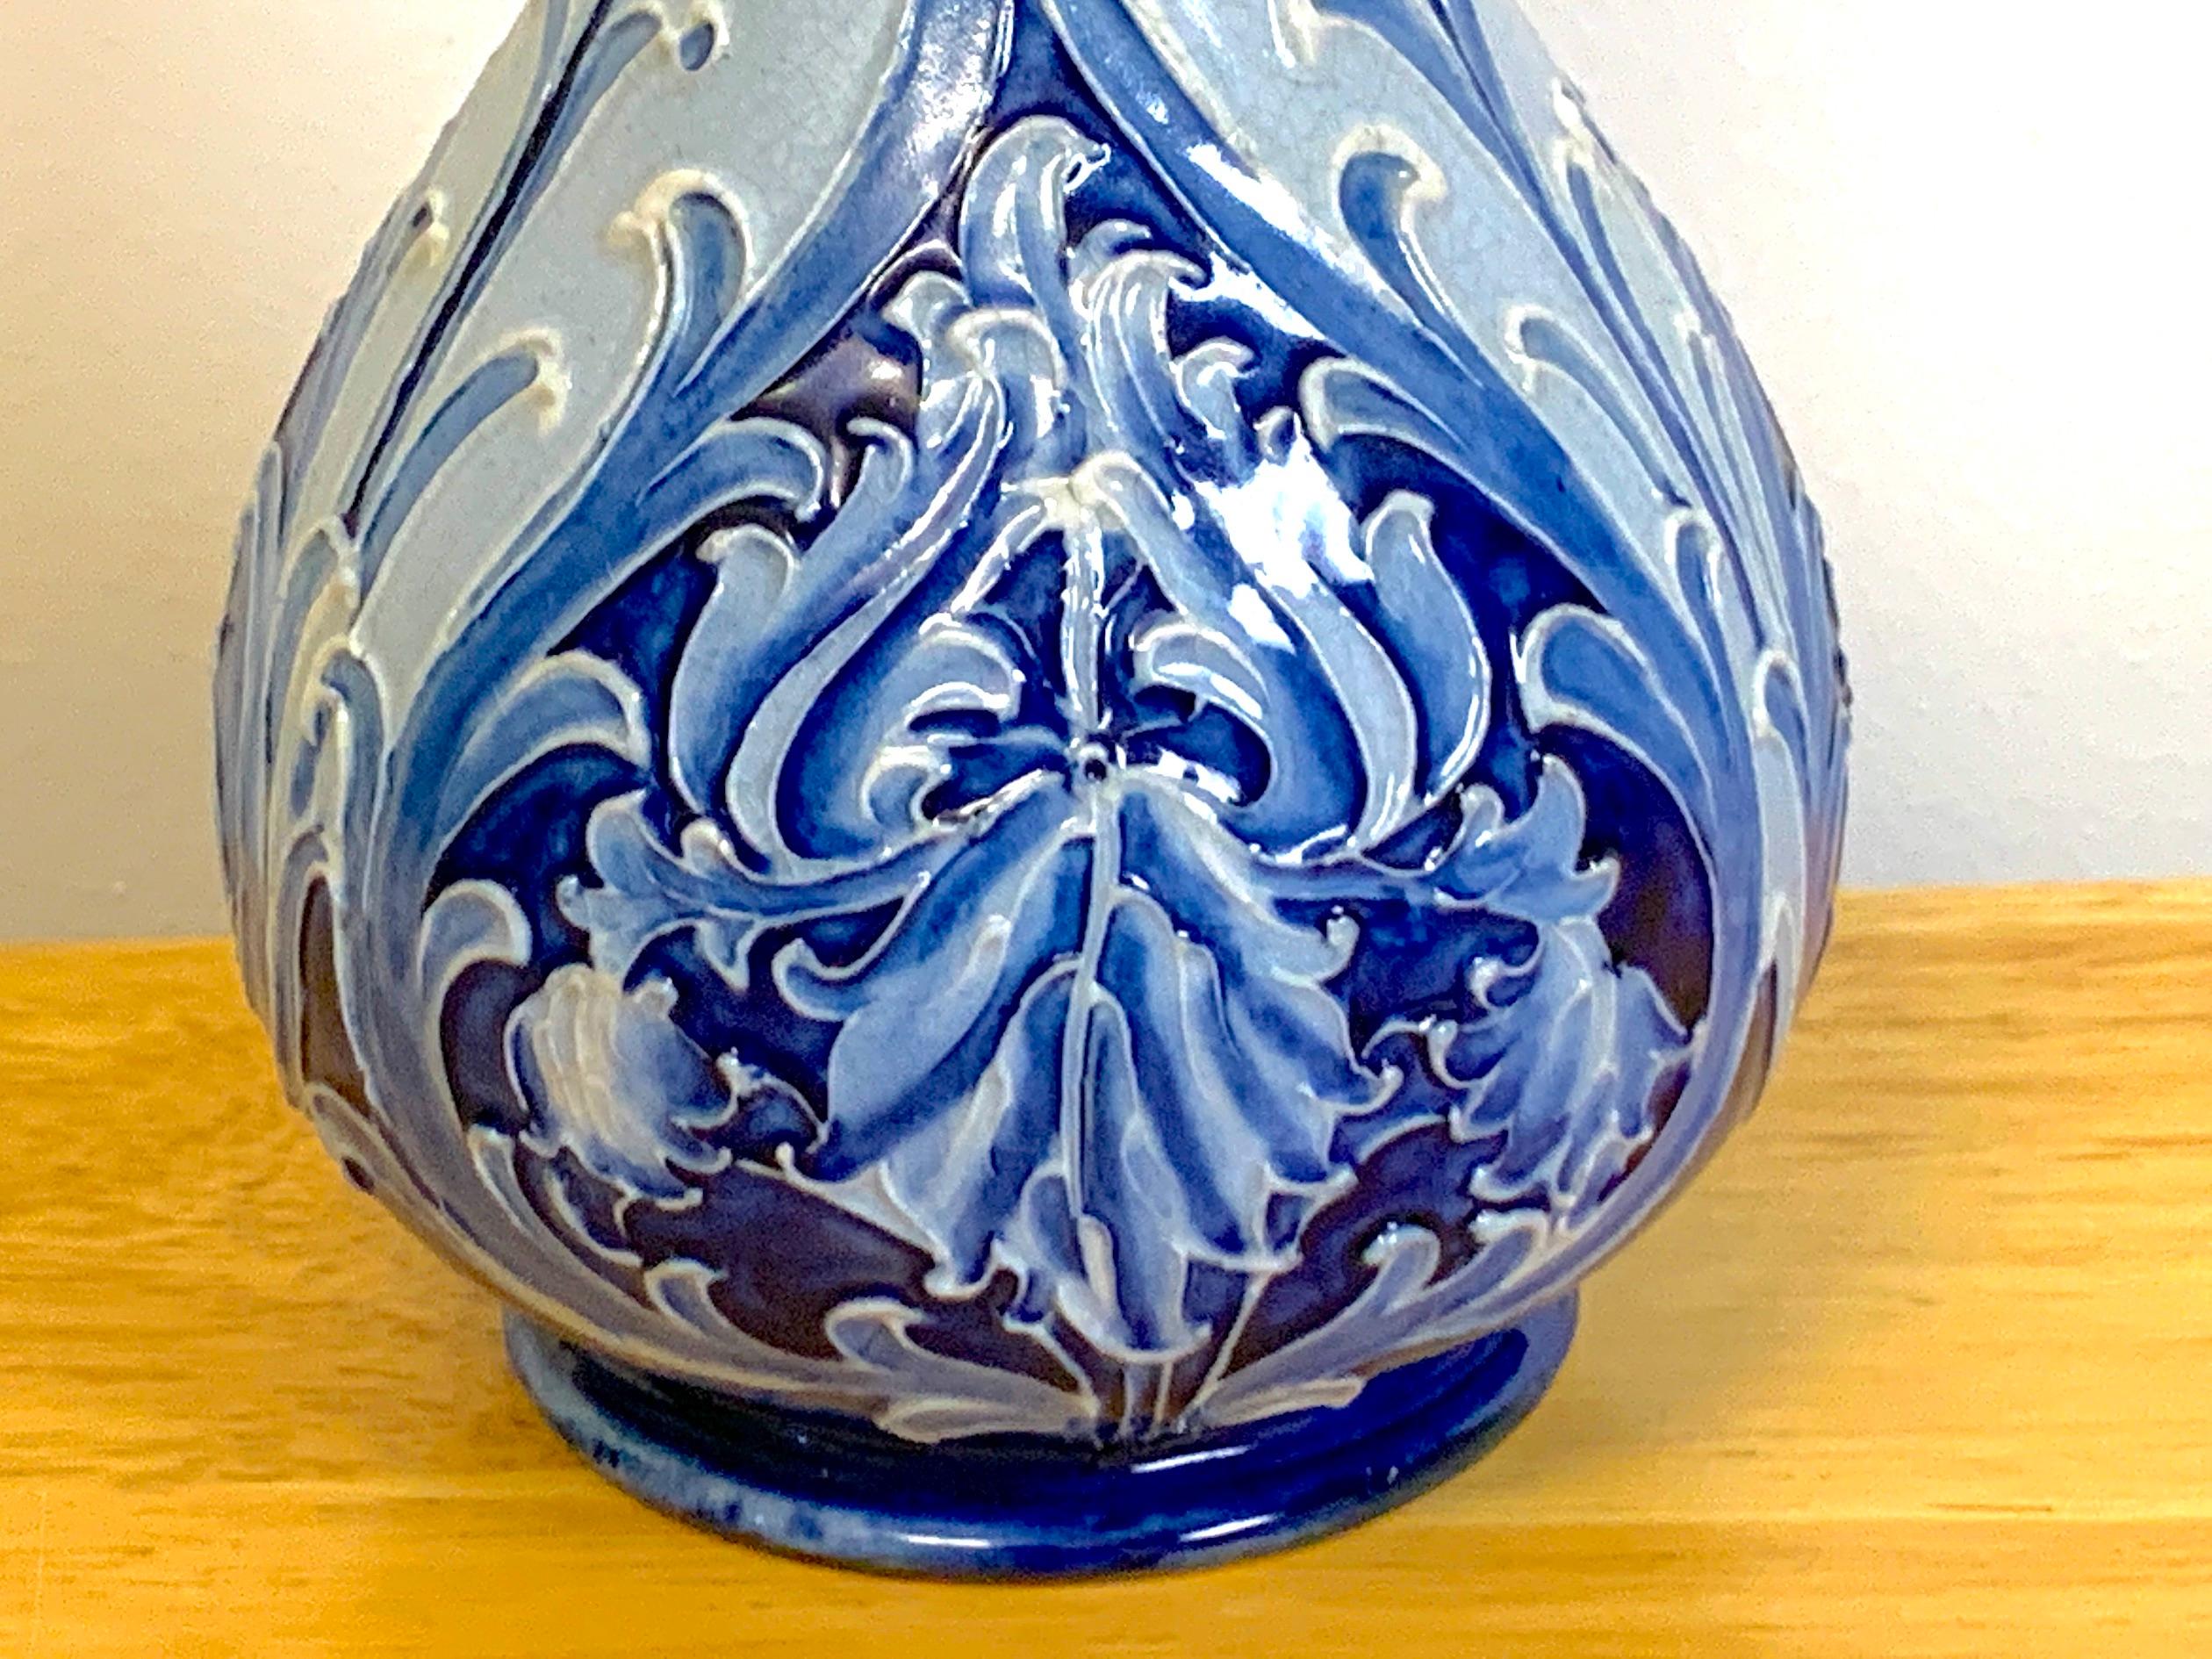 19th Century Florian Ware, Art Nouveau Long Neck Vase by William Moorcroft